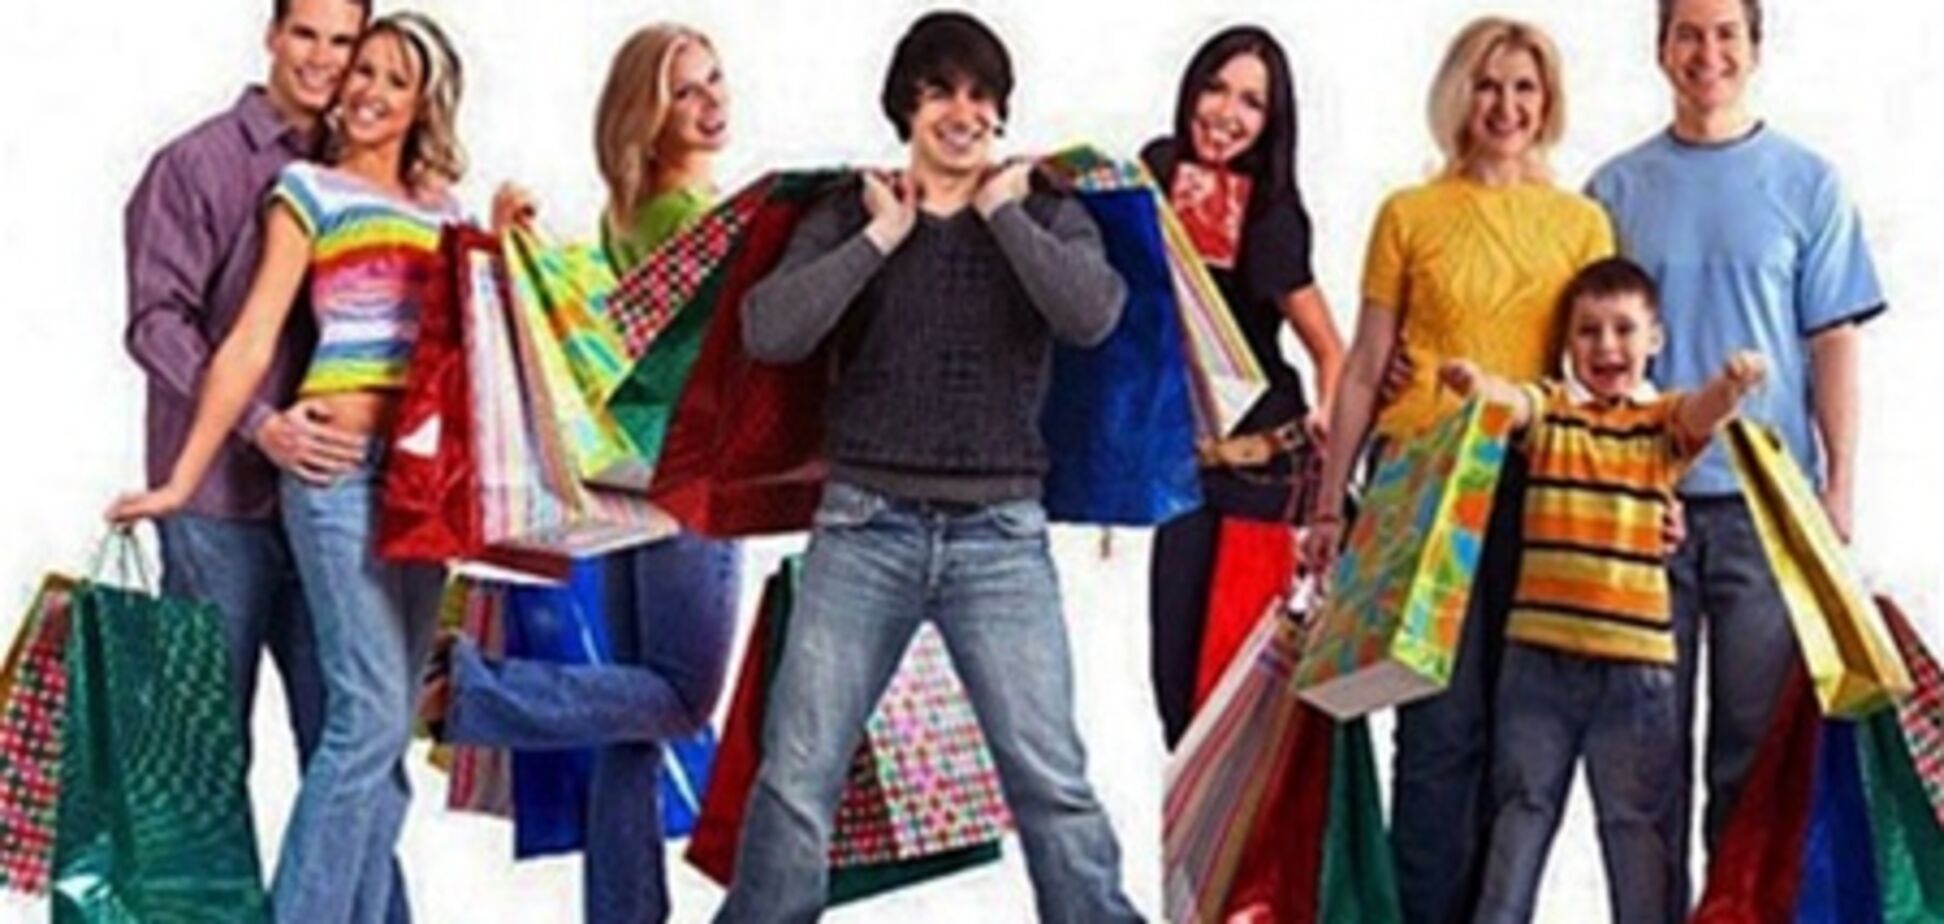 Фестиваль шопинга пройдет в Стамбуле, 21 июня 2012